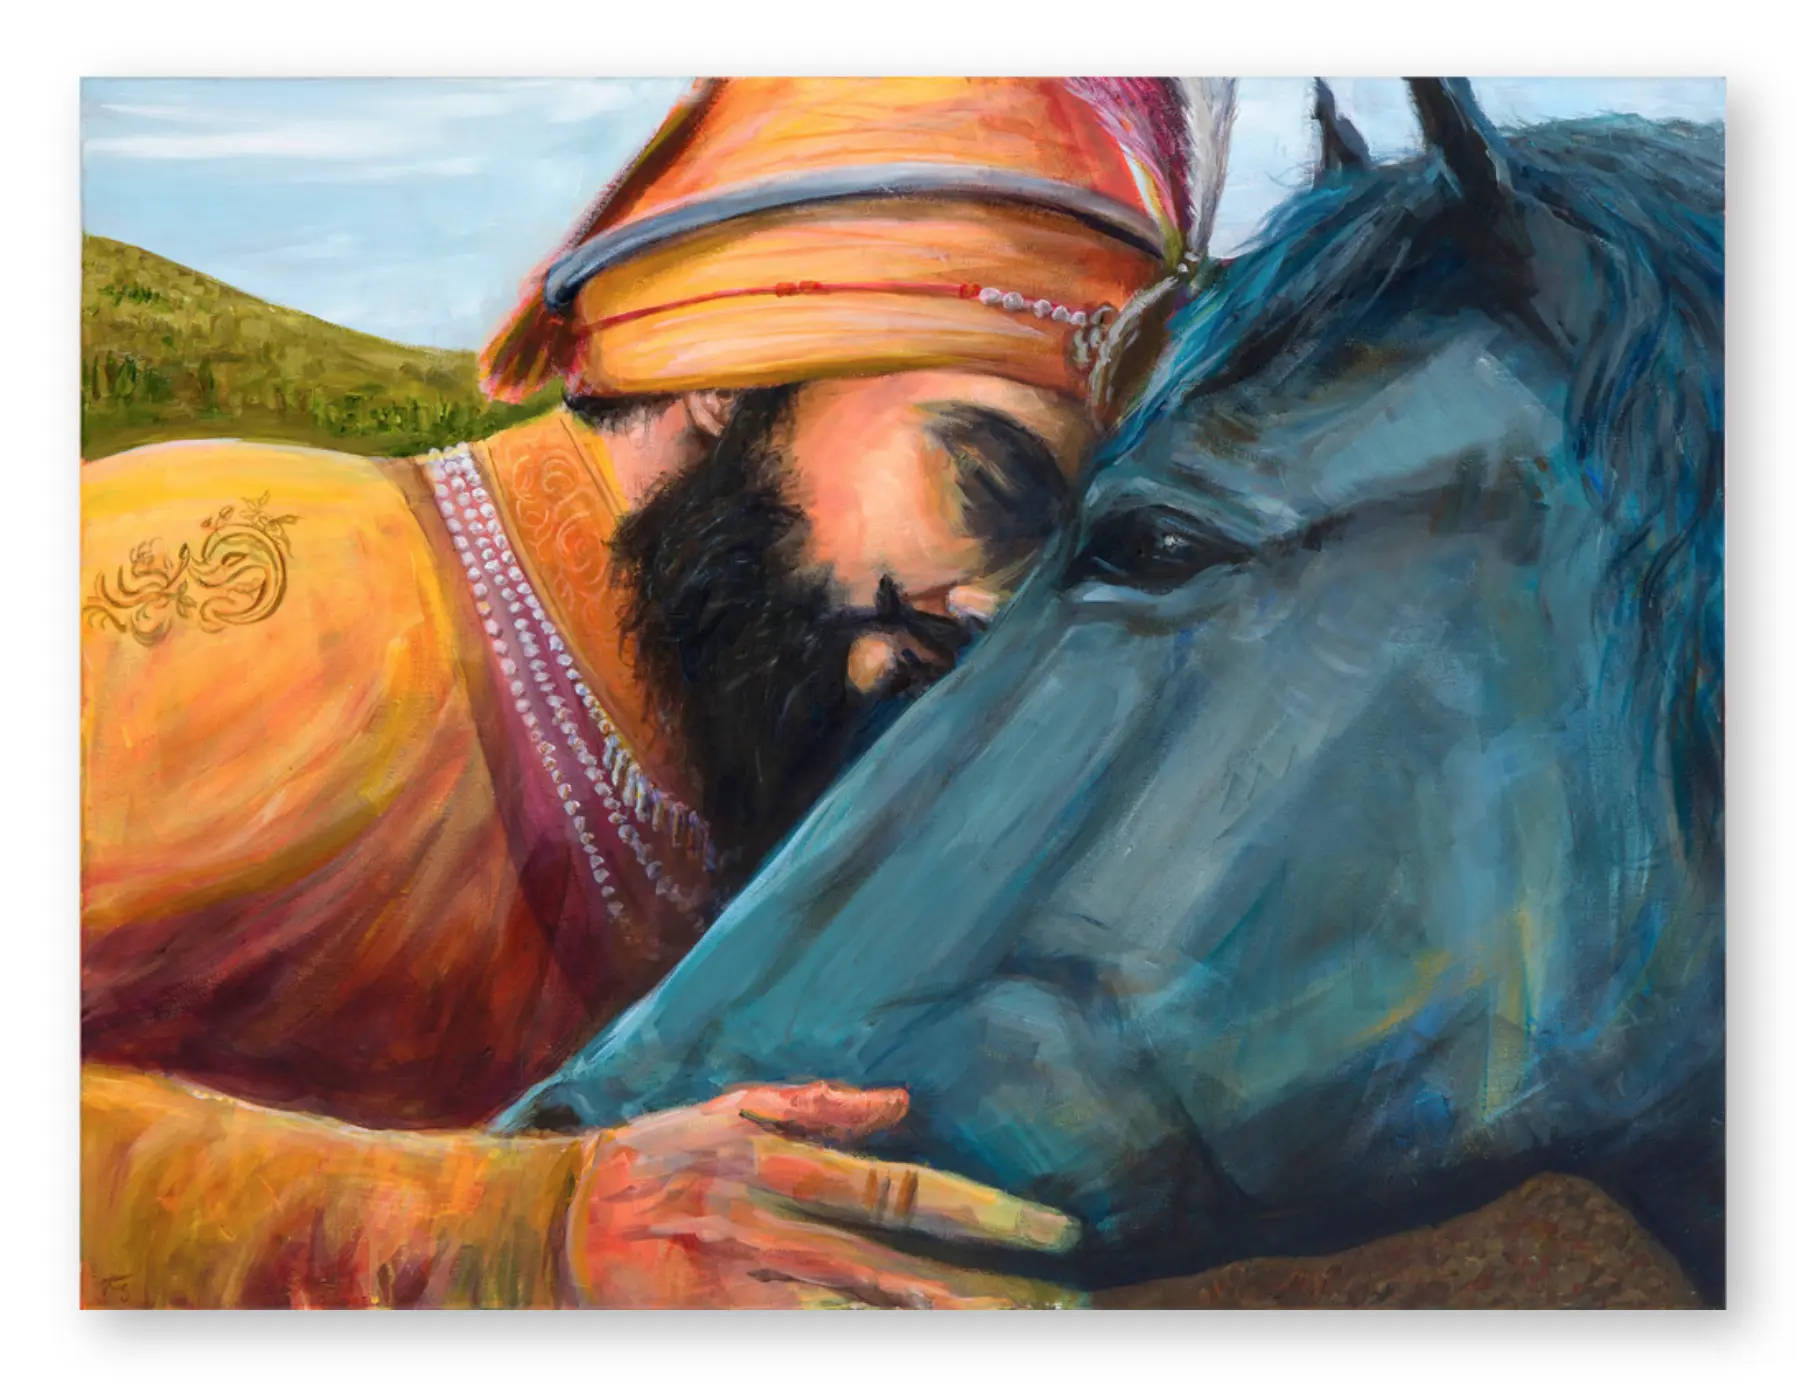 Gurugobind Singh Ji Streichelt Ein Pferd. Wallpaper